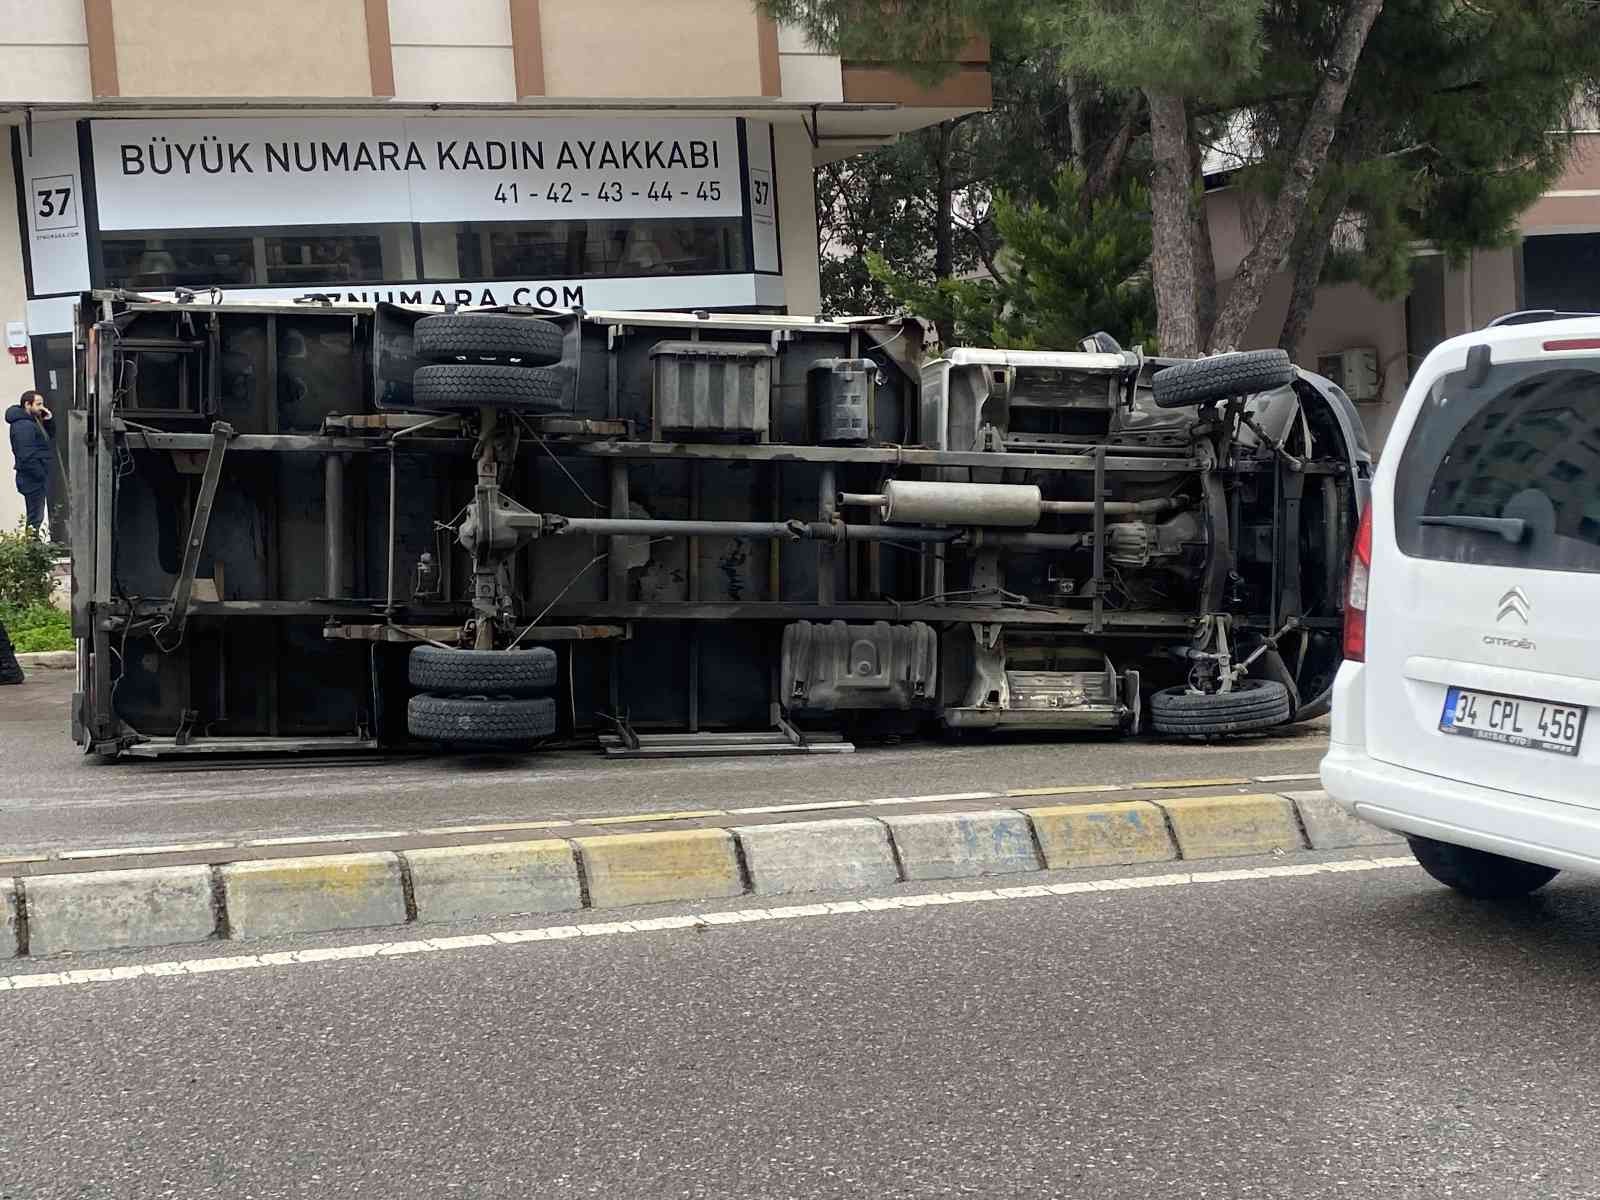 İstanbul Kadıköy’de sürücüsünün direksiyon hakimiyetini kaybettiği kamyonet, orta refüjü aşıp park halindeki 2 motosiklete çarptı. Çarpmanın ...